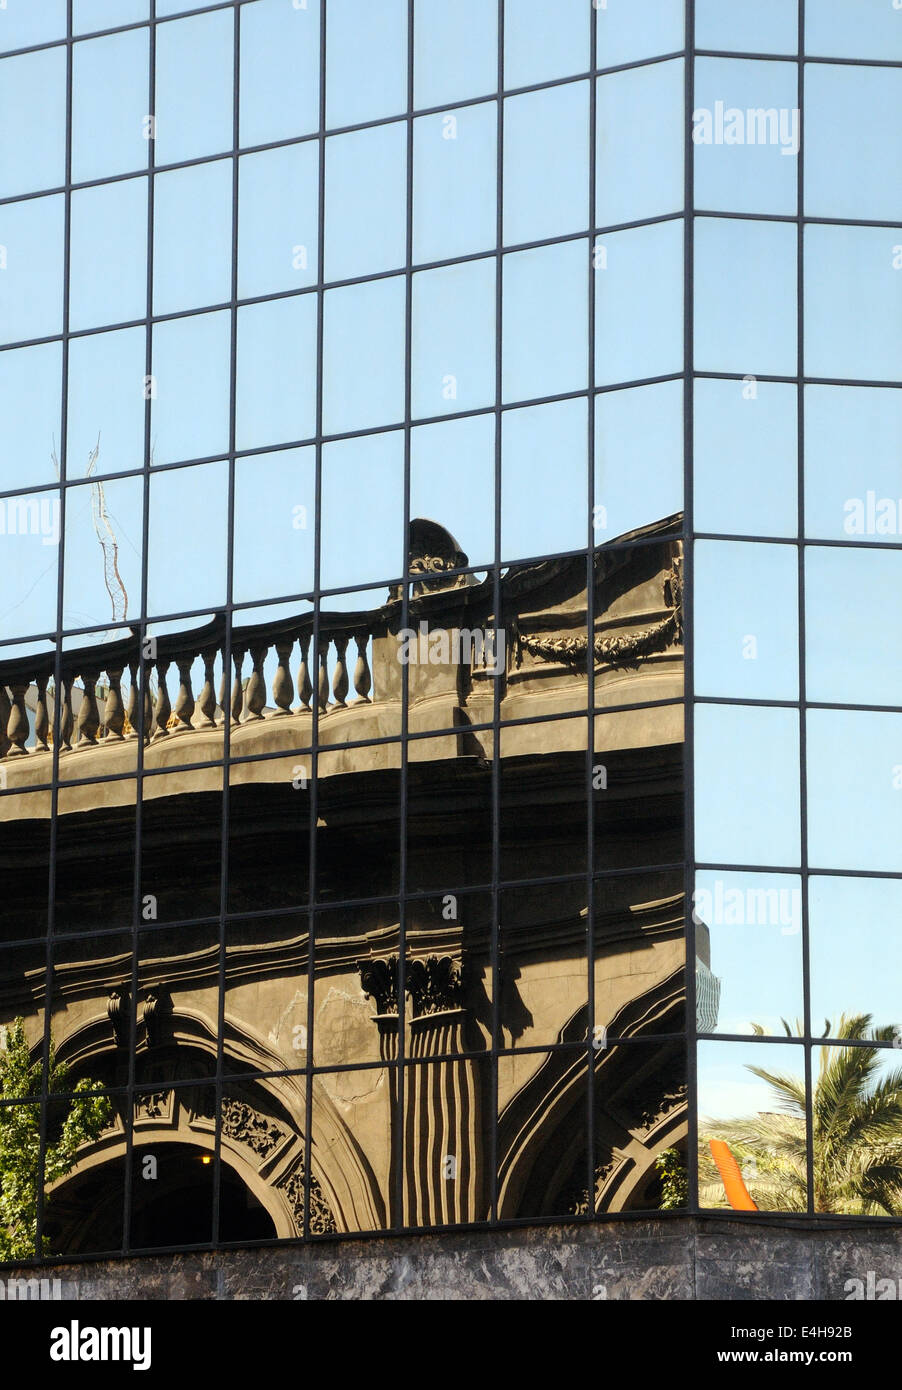 Partie d'un bâtiment colonial classique se reflète dans un immeuble de bureaux modernes dans la Plaza de Armas. Santiago, Chili Banque D'Images